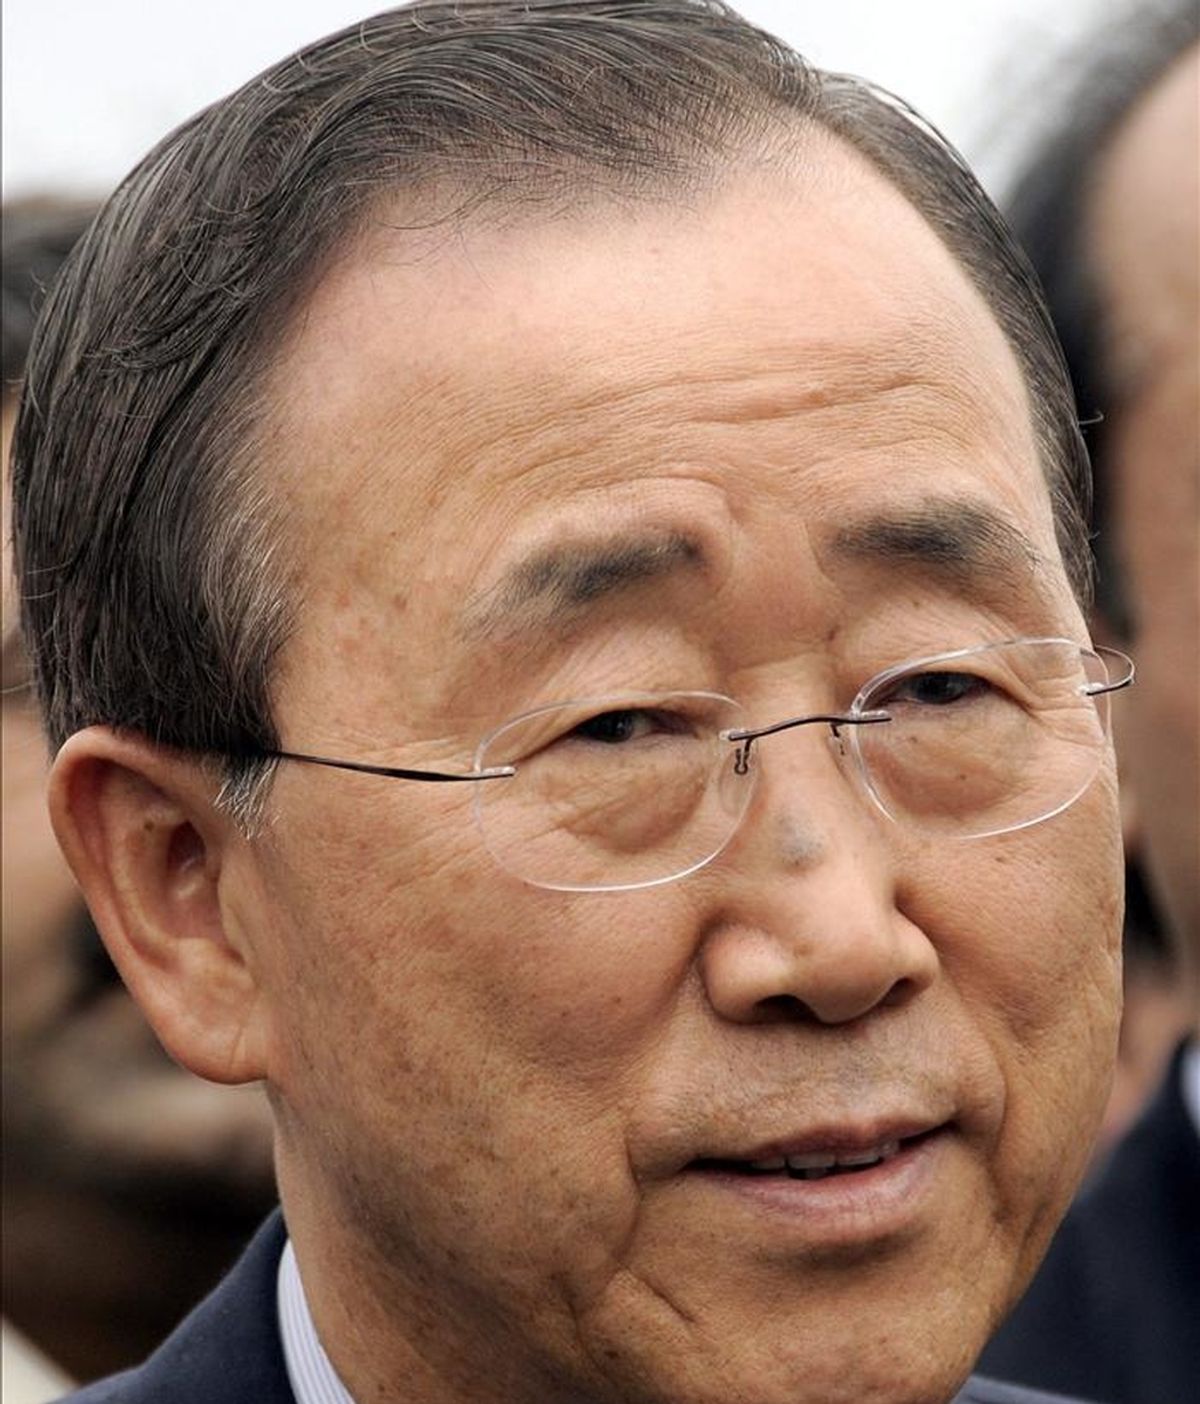 El portavoz de la ONU, Martin Nesirky, explicó que Ban quiere hablar "lo antes posible" con Ouattara para trasladarle su "gran preocupación" acerca de la situación humanitaria en la que se encuentra el país africano. EFE/Archivo